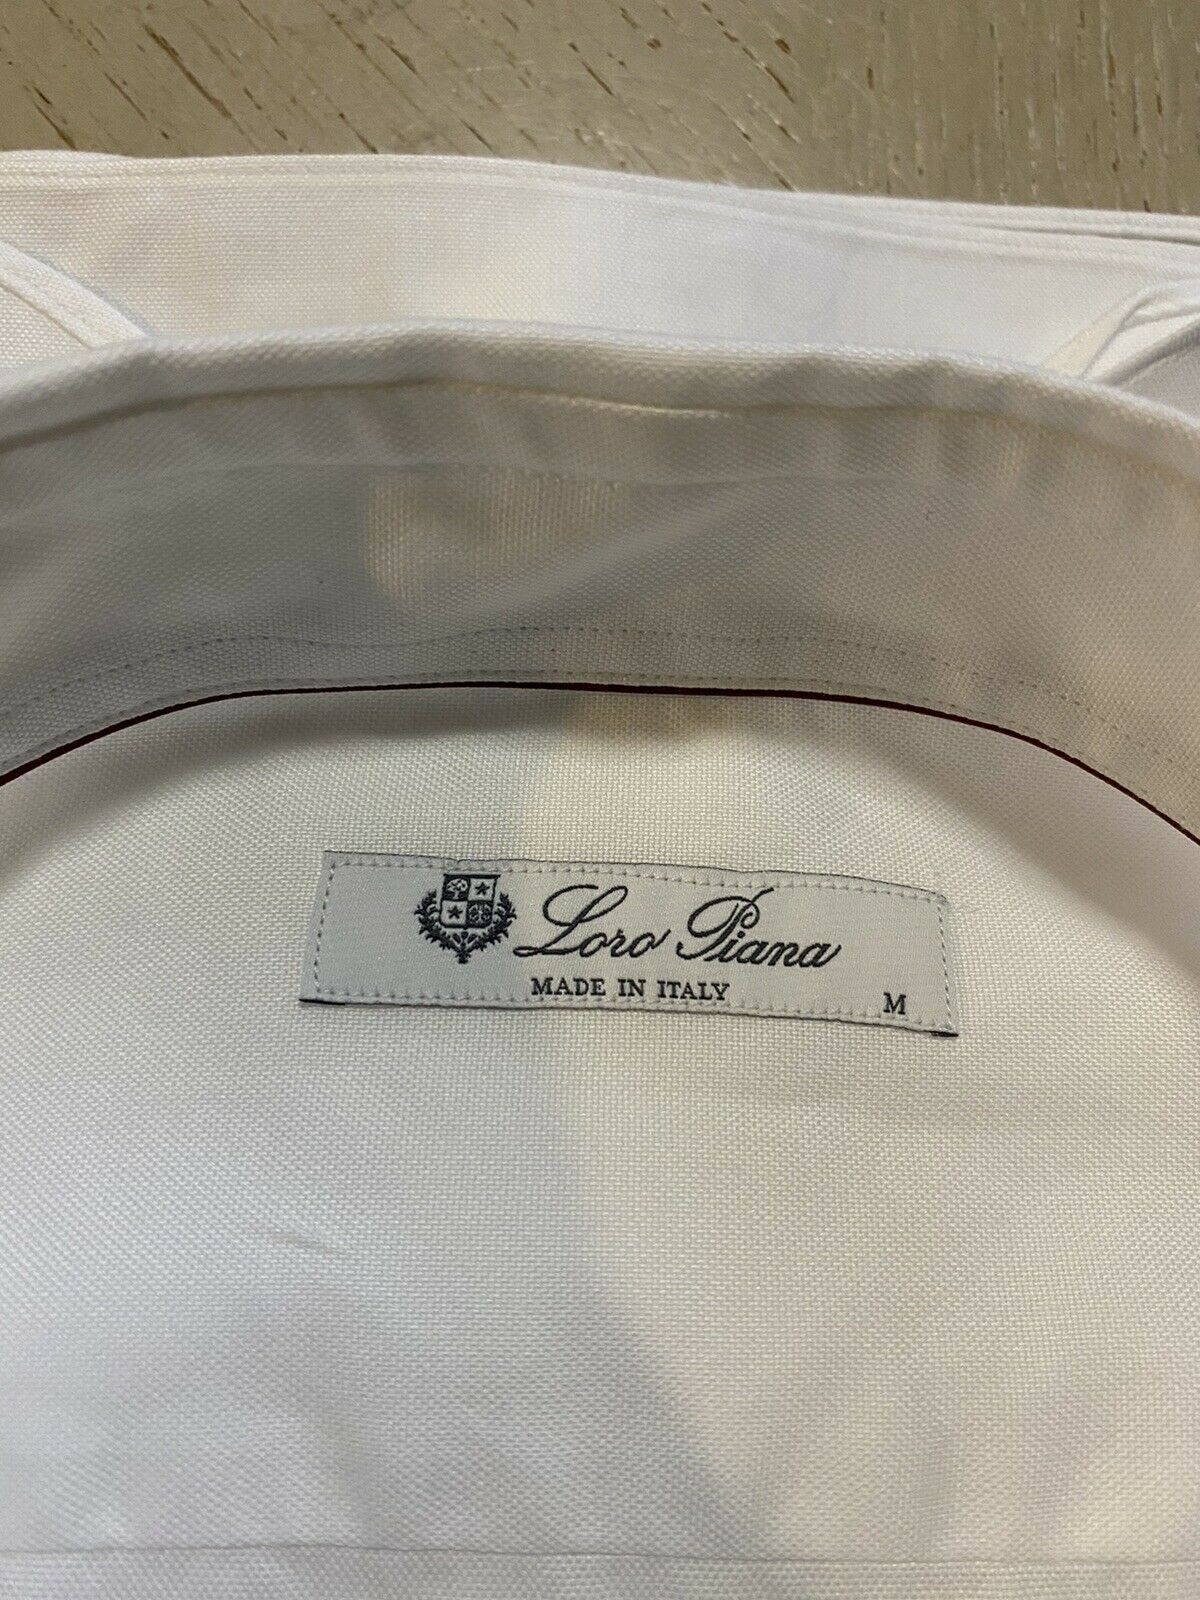 Neu mit Etikett: 495 $ Loro Piana Herrenhemd Weiß Größe M Italien